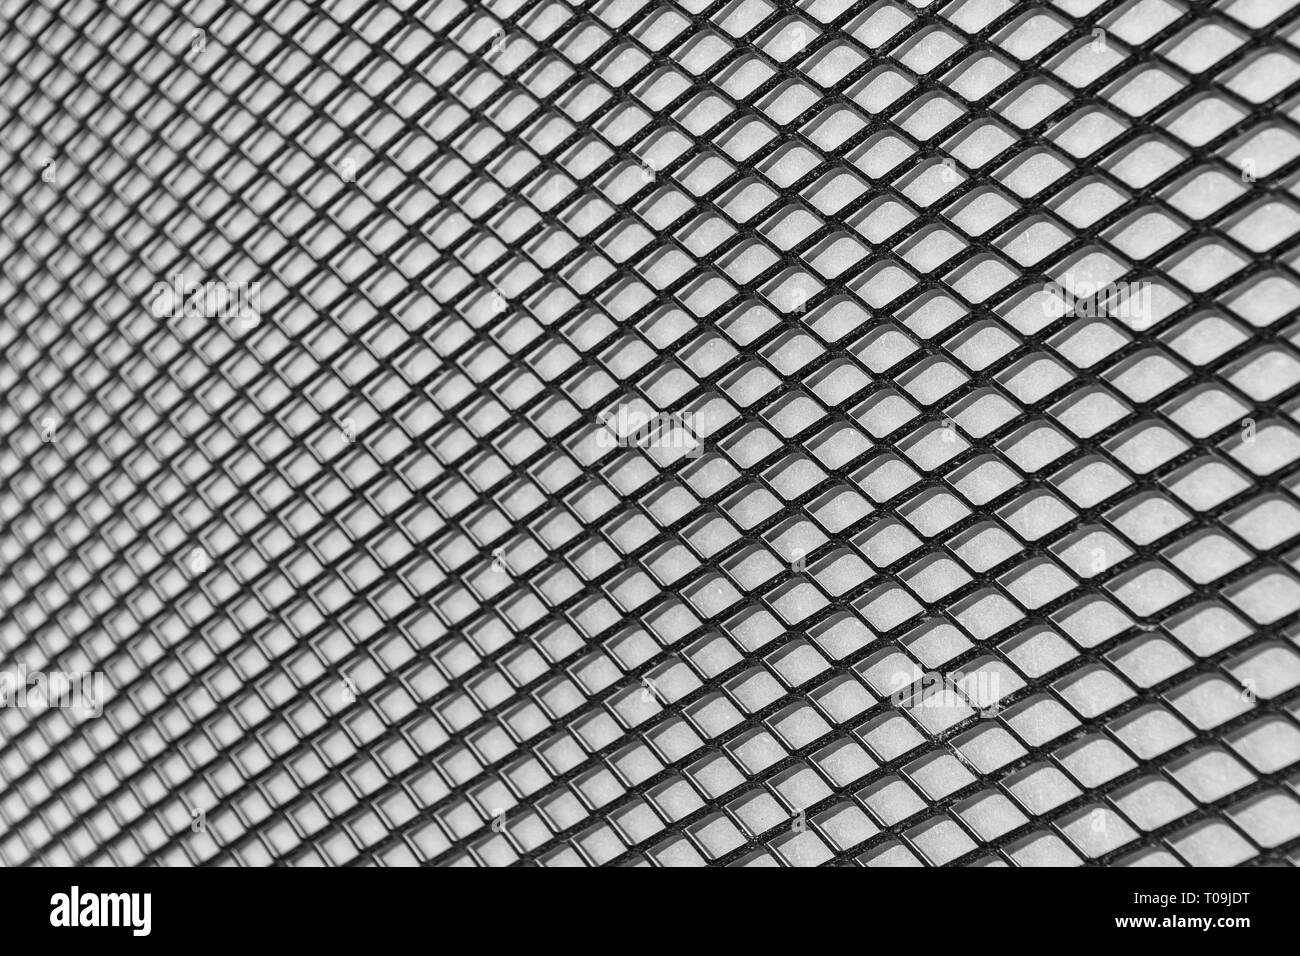 Arrière-plan géométrique noir et blanc d'un grillage métallique de diamants Banque D'Images